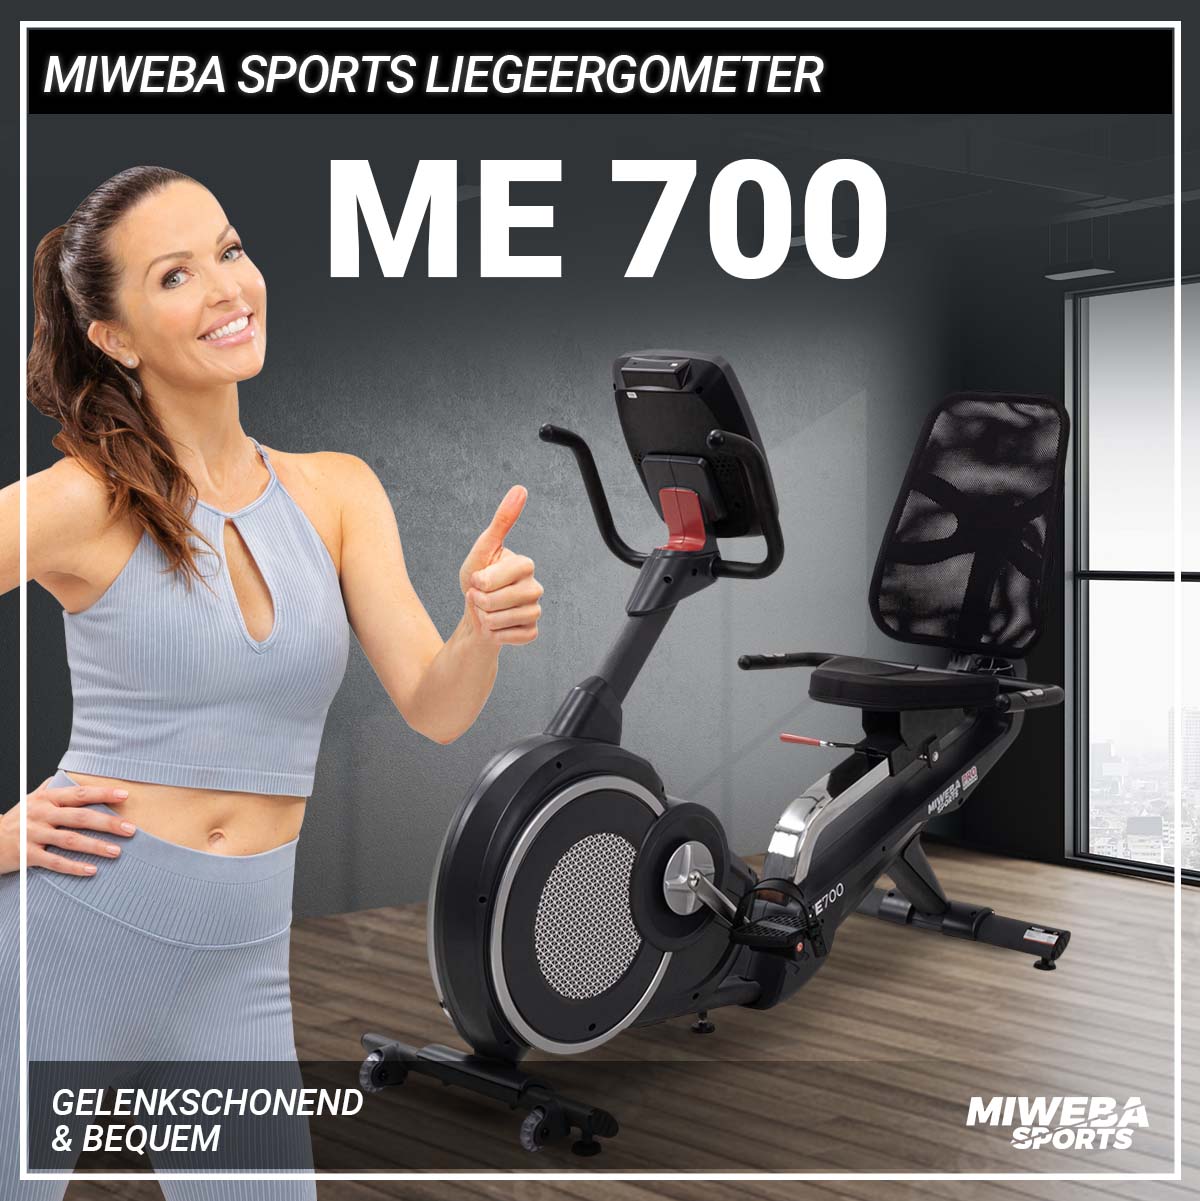 Miweba Liegeergometer ME700